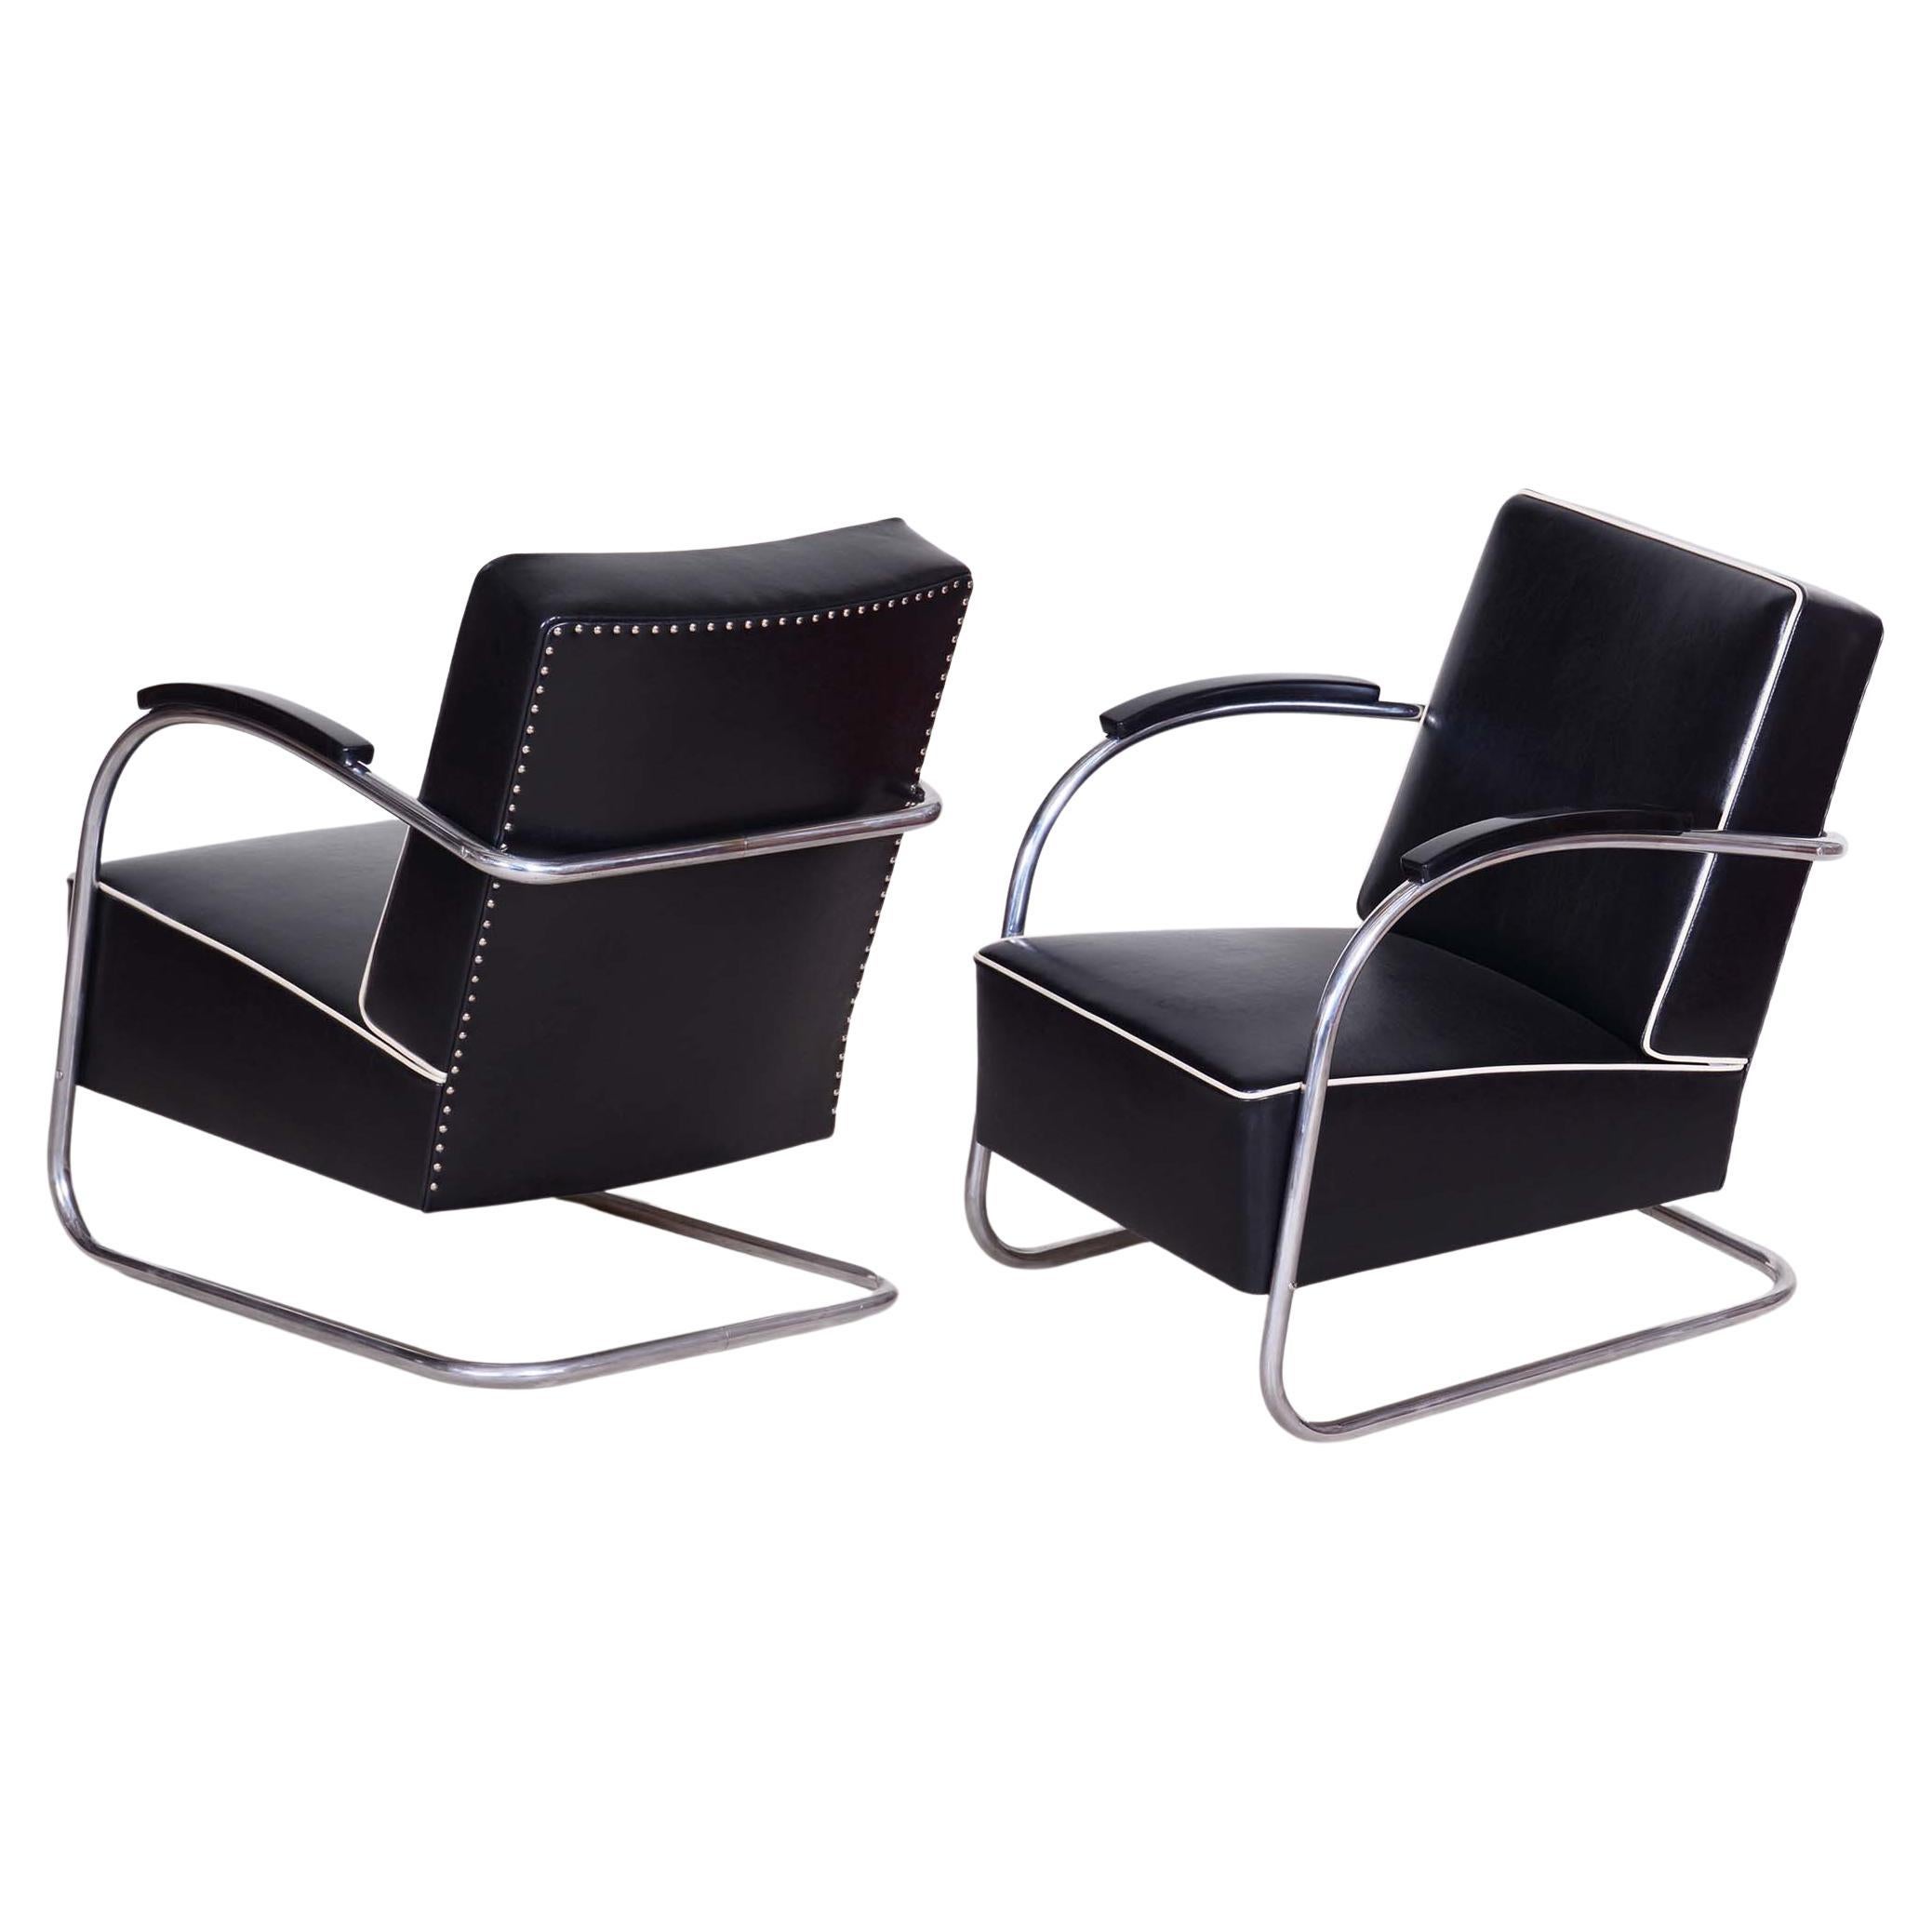 Paire de fauteuils Bauhaus noirs, fabriqués par Mucke Melder en République tchèque dans les années 1930